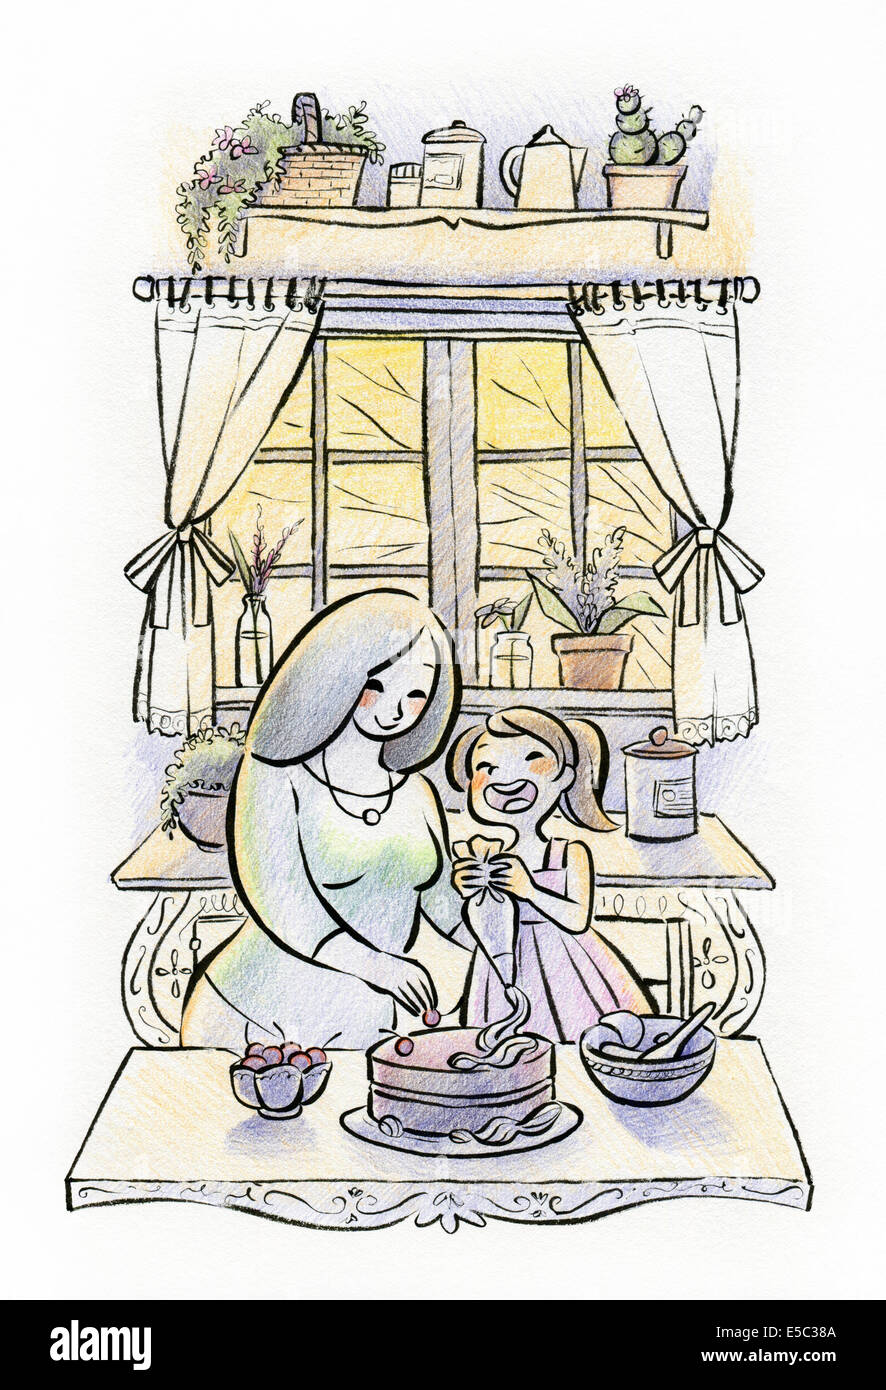 Illustrazione della madre e figlia preparare la torta insieme in cucina Foto Stock